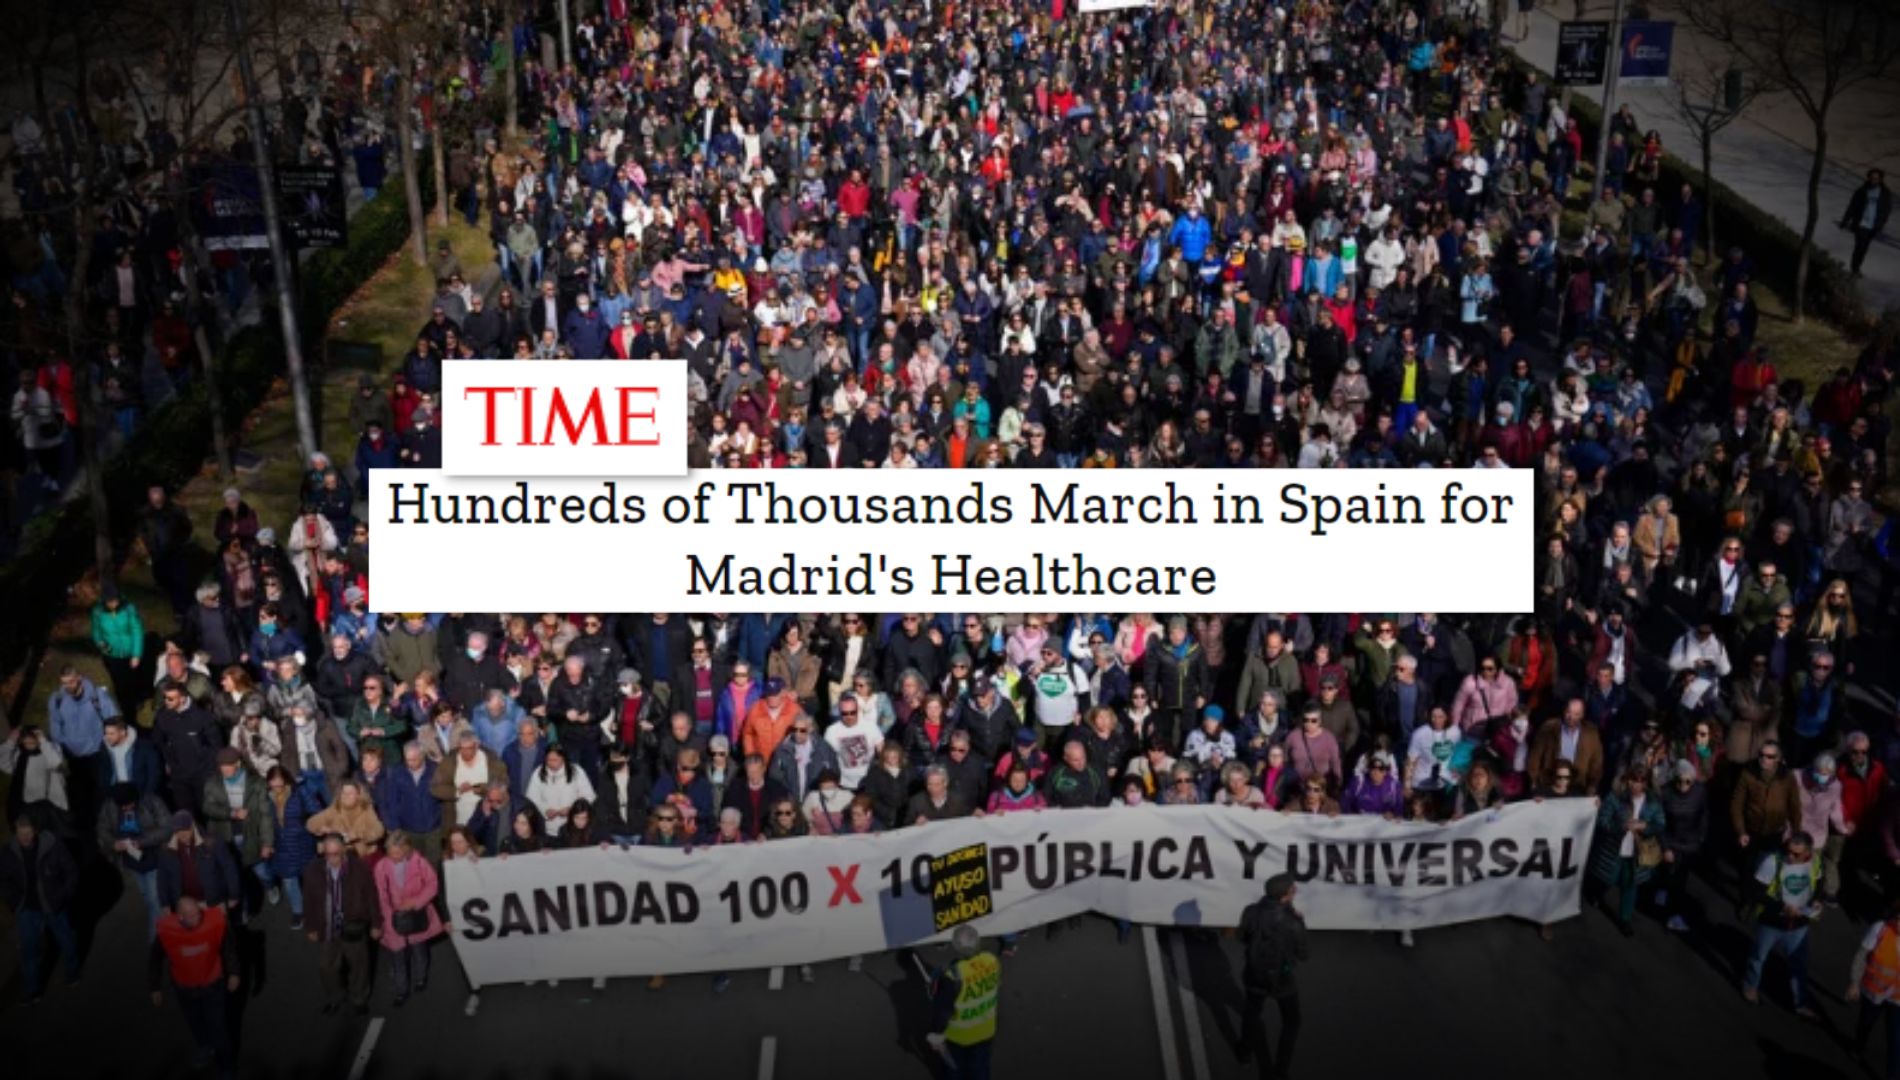 La revista Time se hace eco de la multitudinaria manifestación contra Ayuso